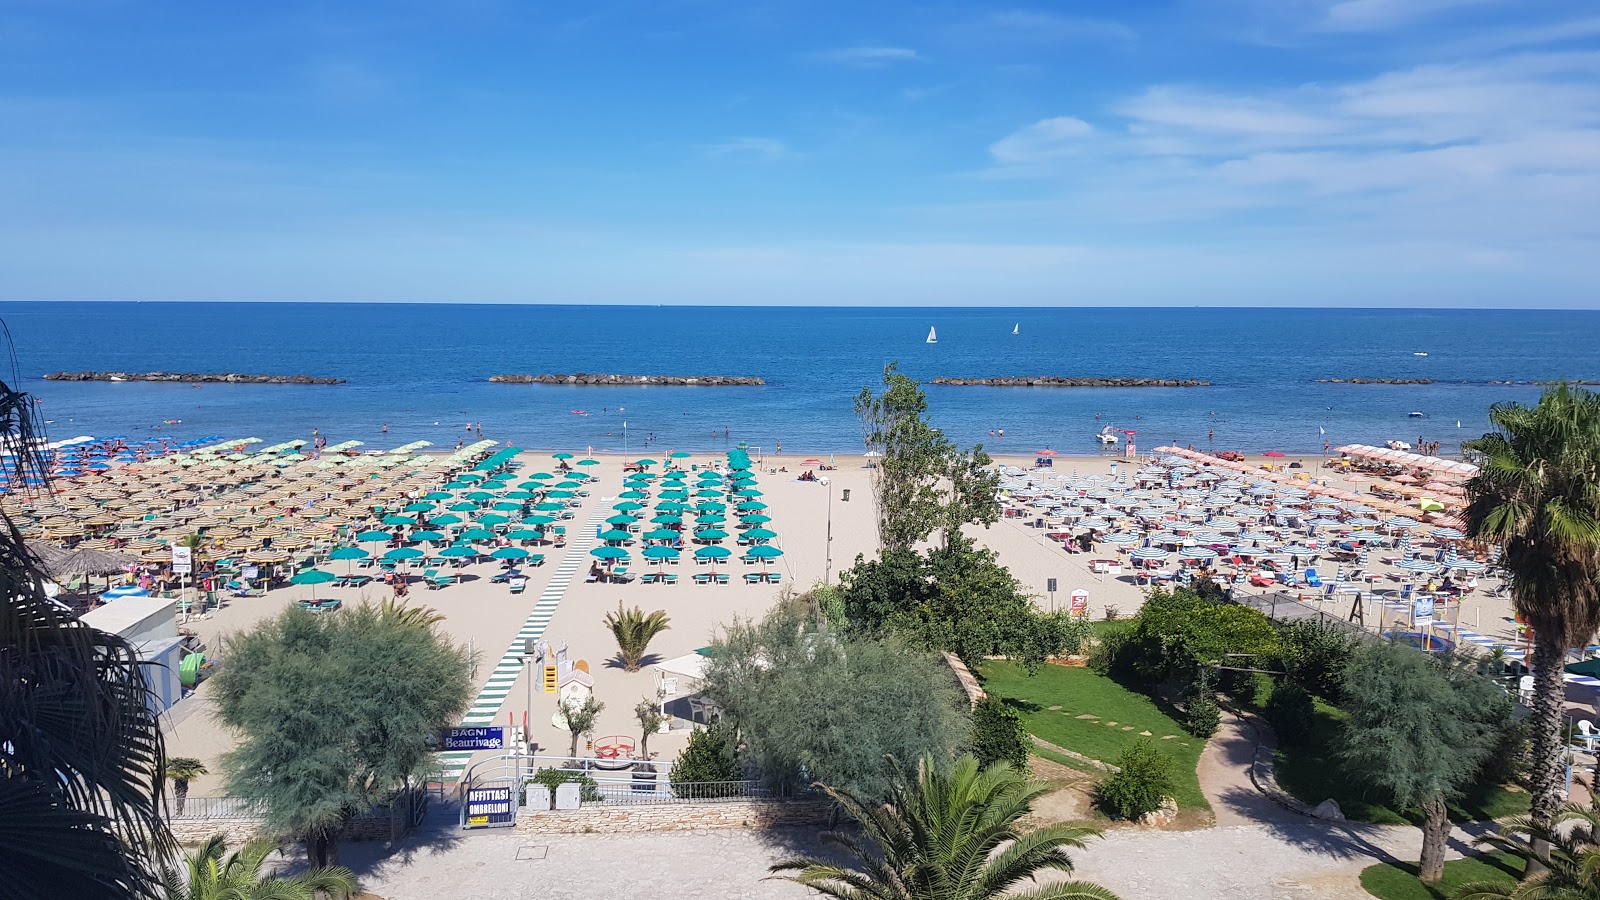 Foto af Spiaggia Campo Europa med høj niveau af renlighed